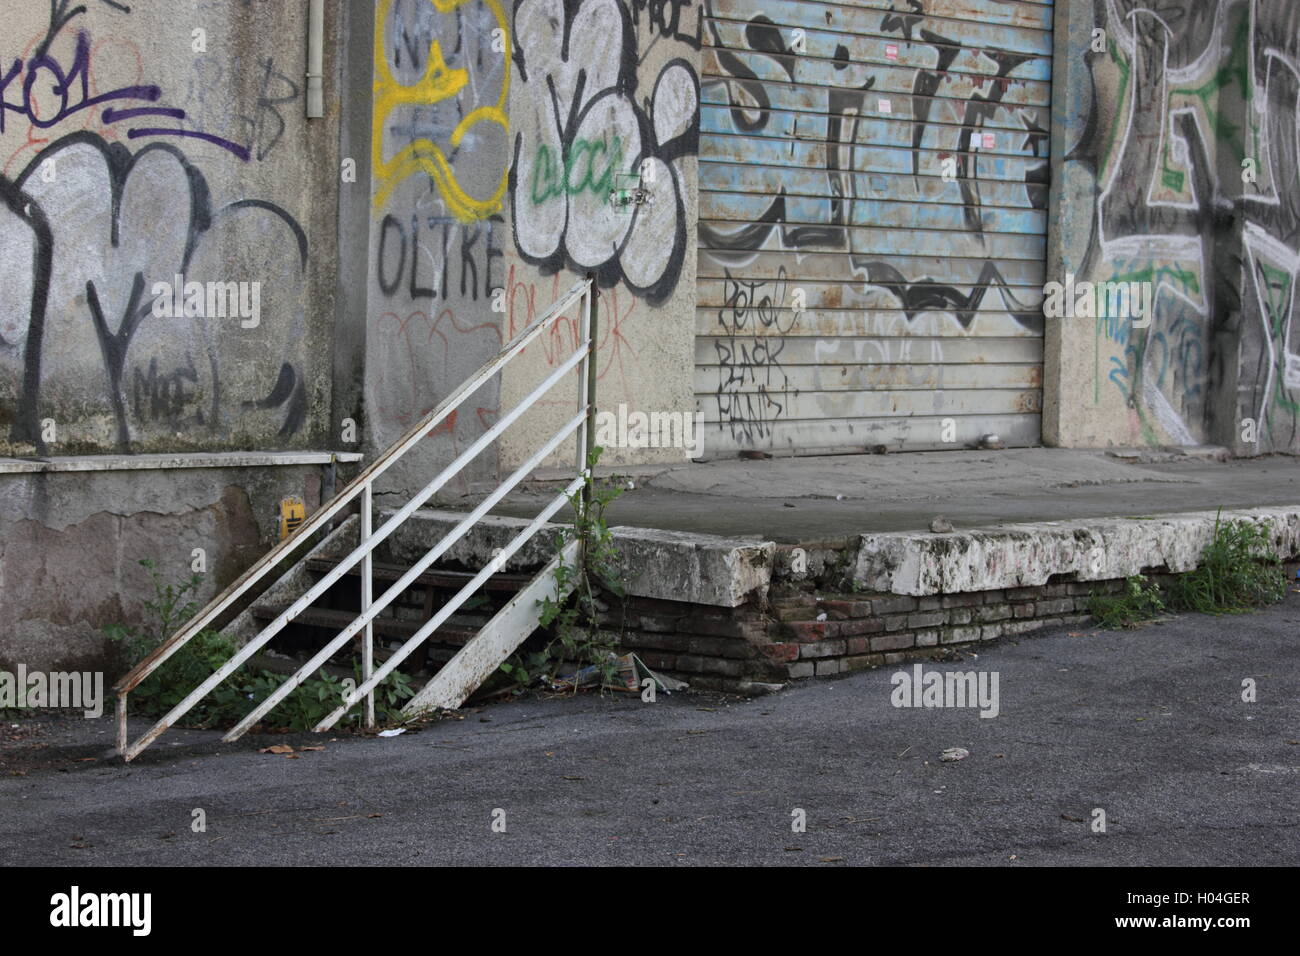 Ein schön heruntergekommenen städtischen Straße Gasse mit Graffiti, photoarkive Stockfoto